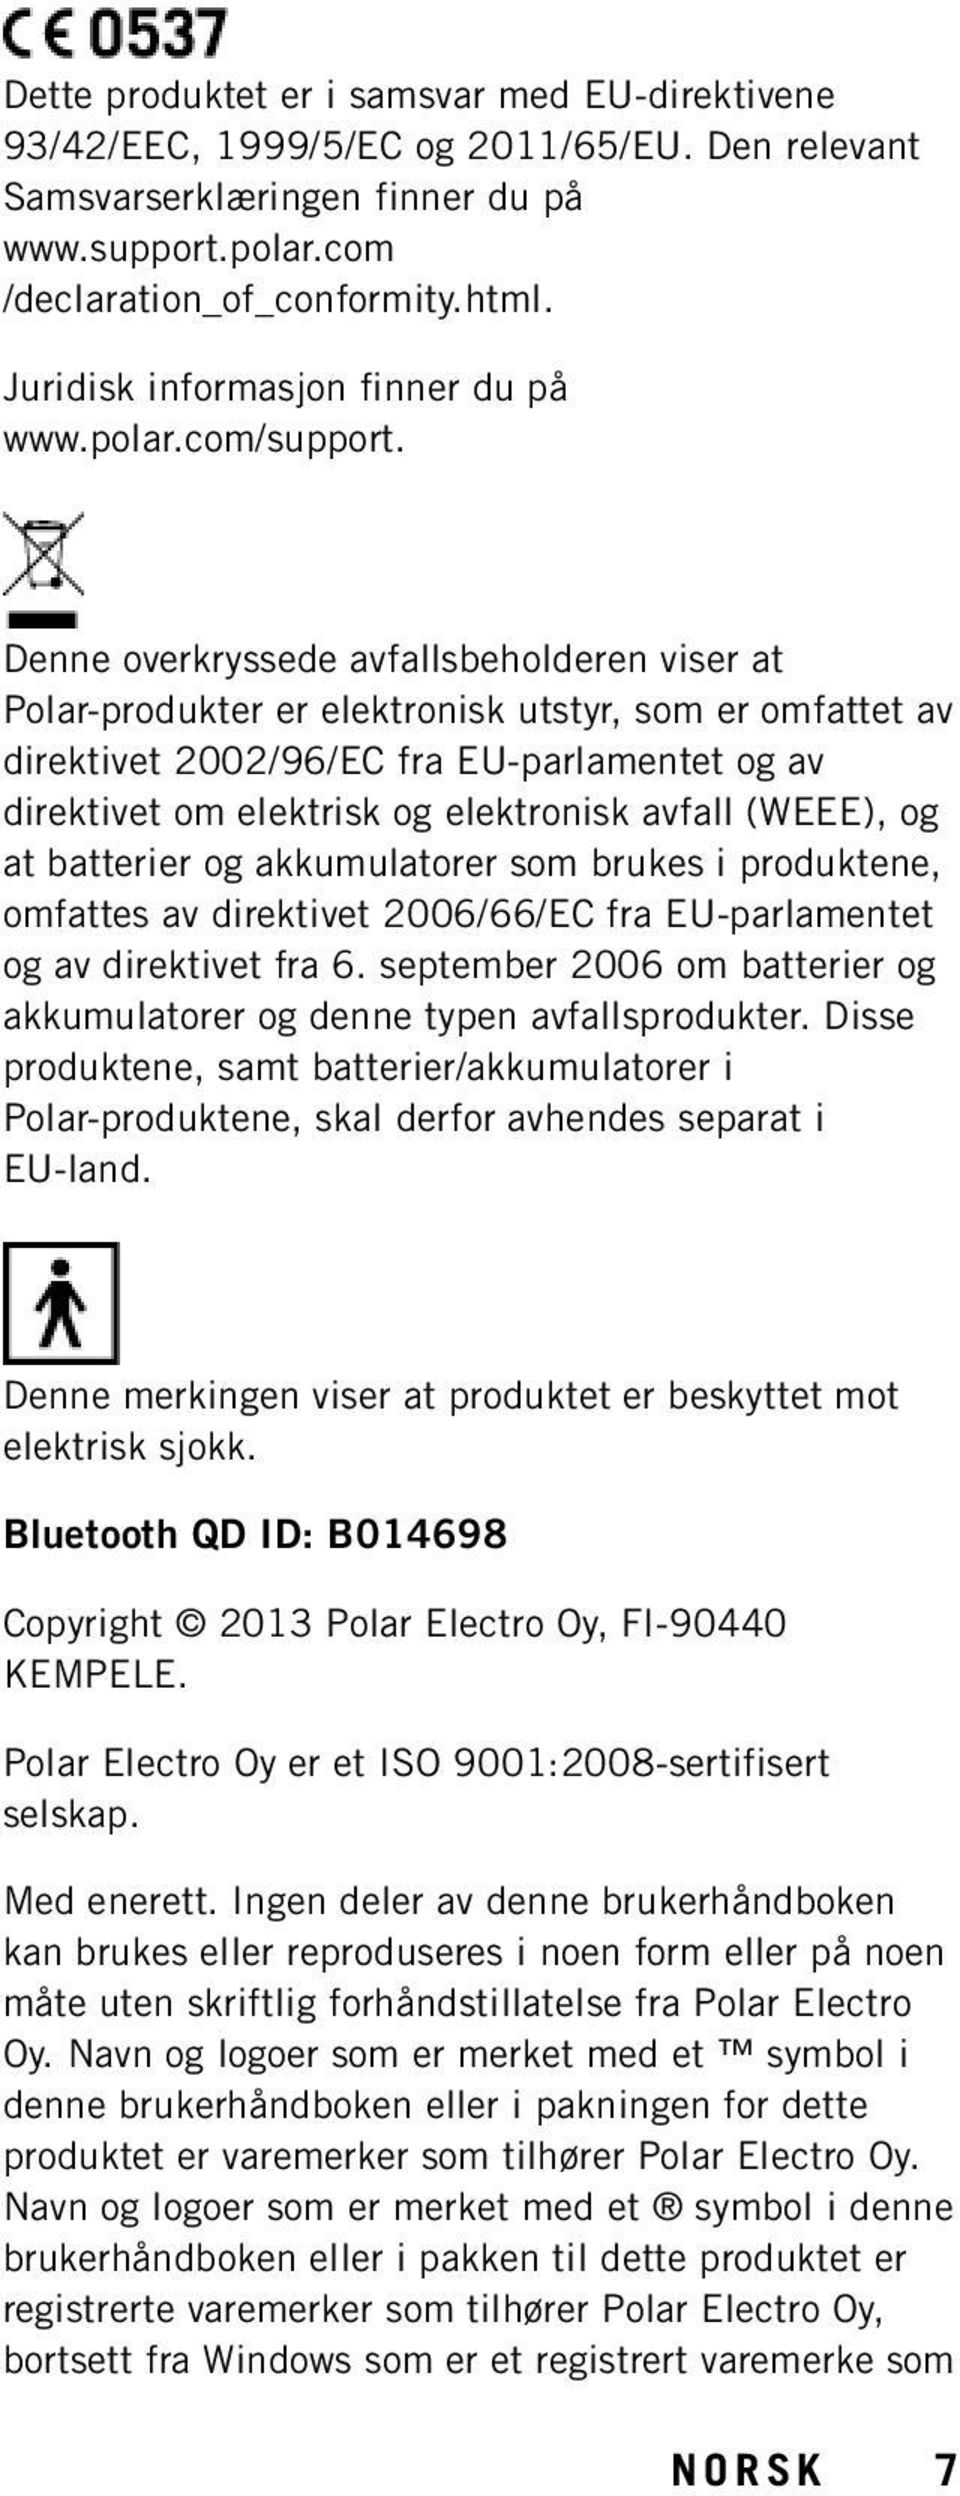 Denne overkryssede avfallsbeholderen viser at Polar-produkter er elektronisk utstyr, som er omfattet av direktivet 2002/96/EC fra EU-parlamentet og av direktivet om elektrisk og elektronisk avfall